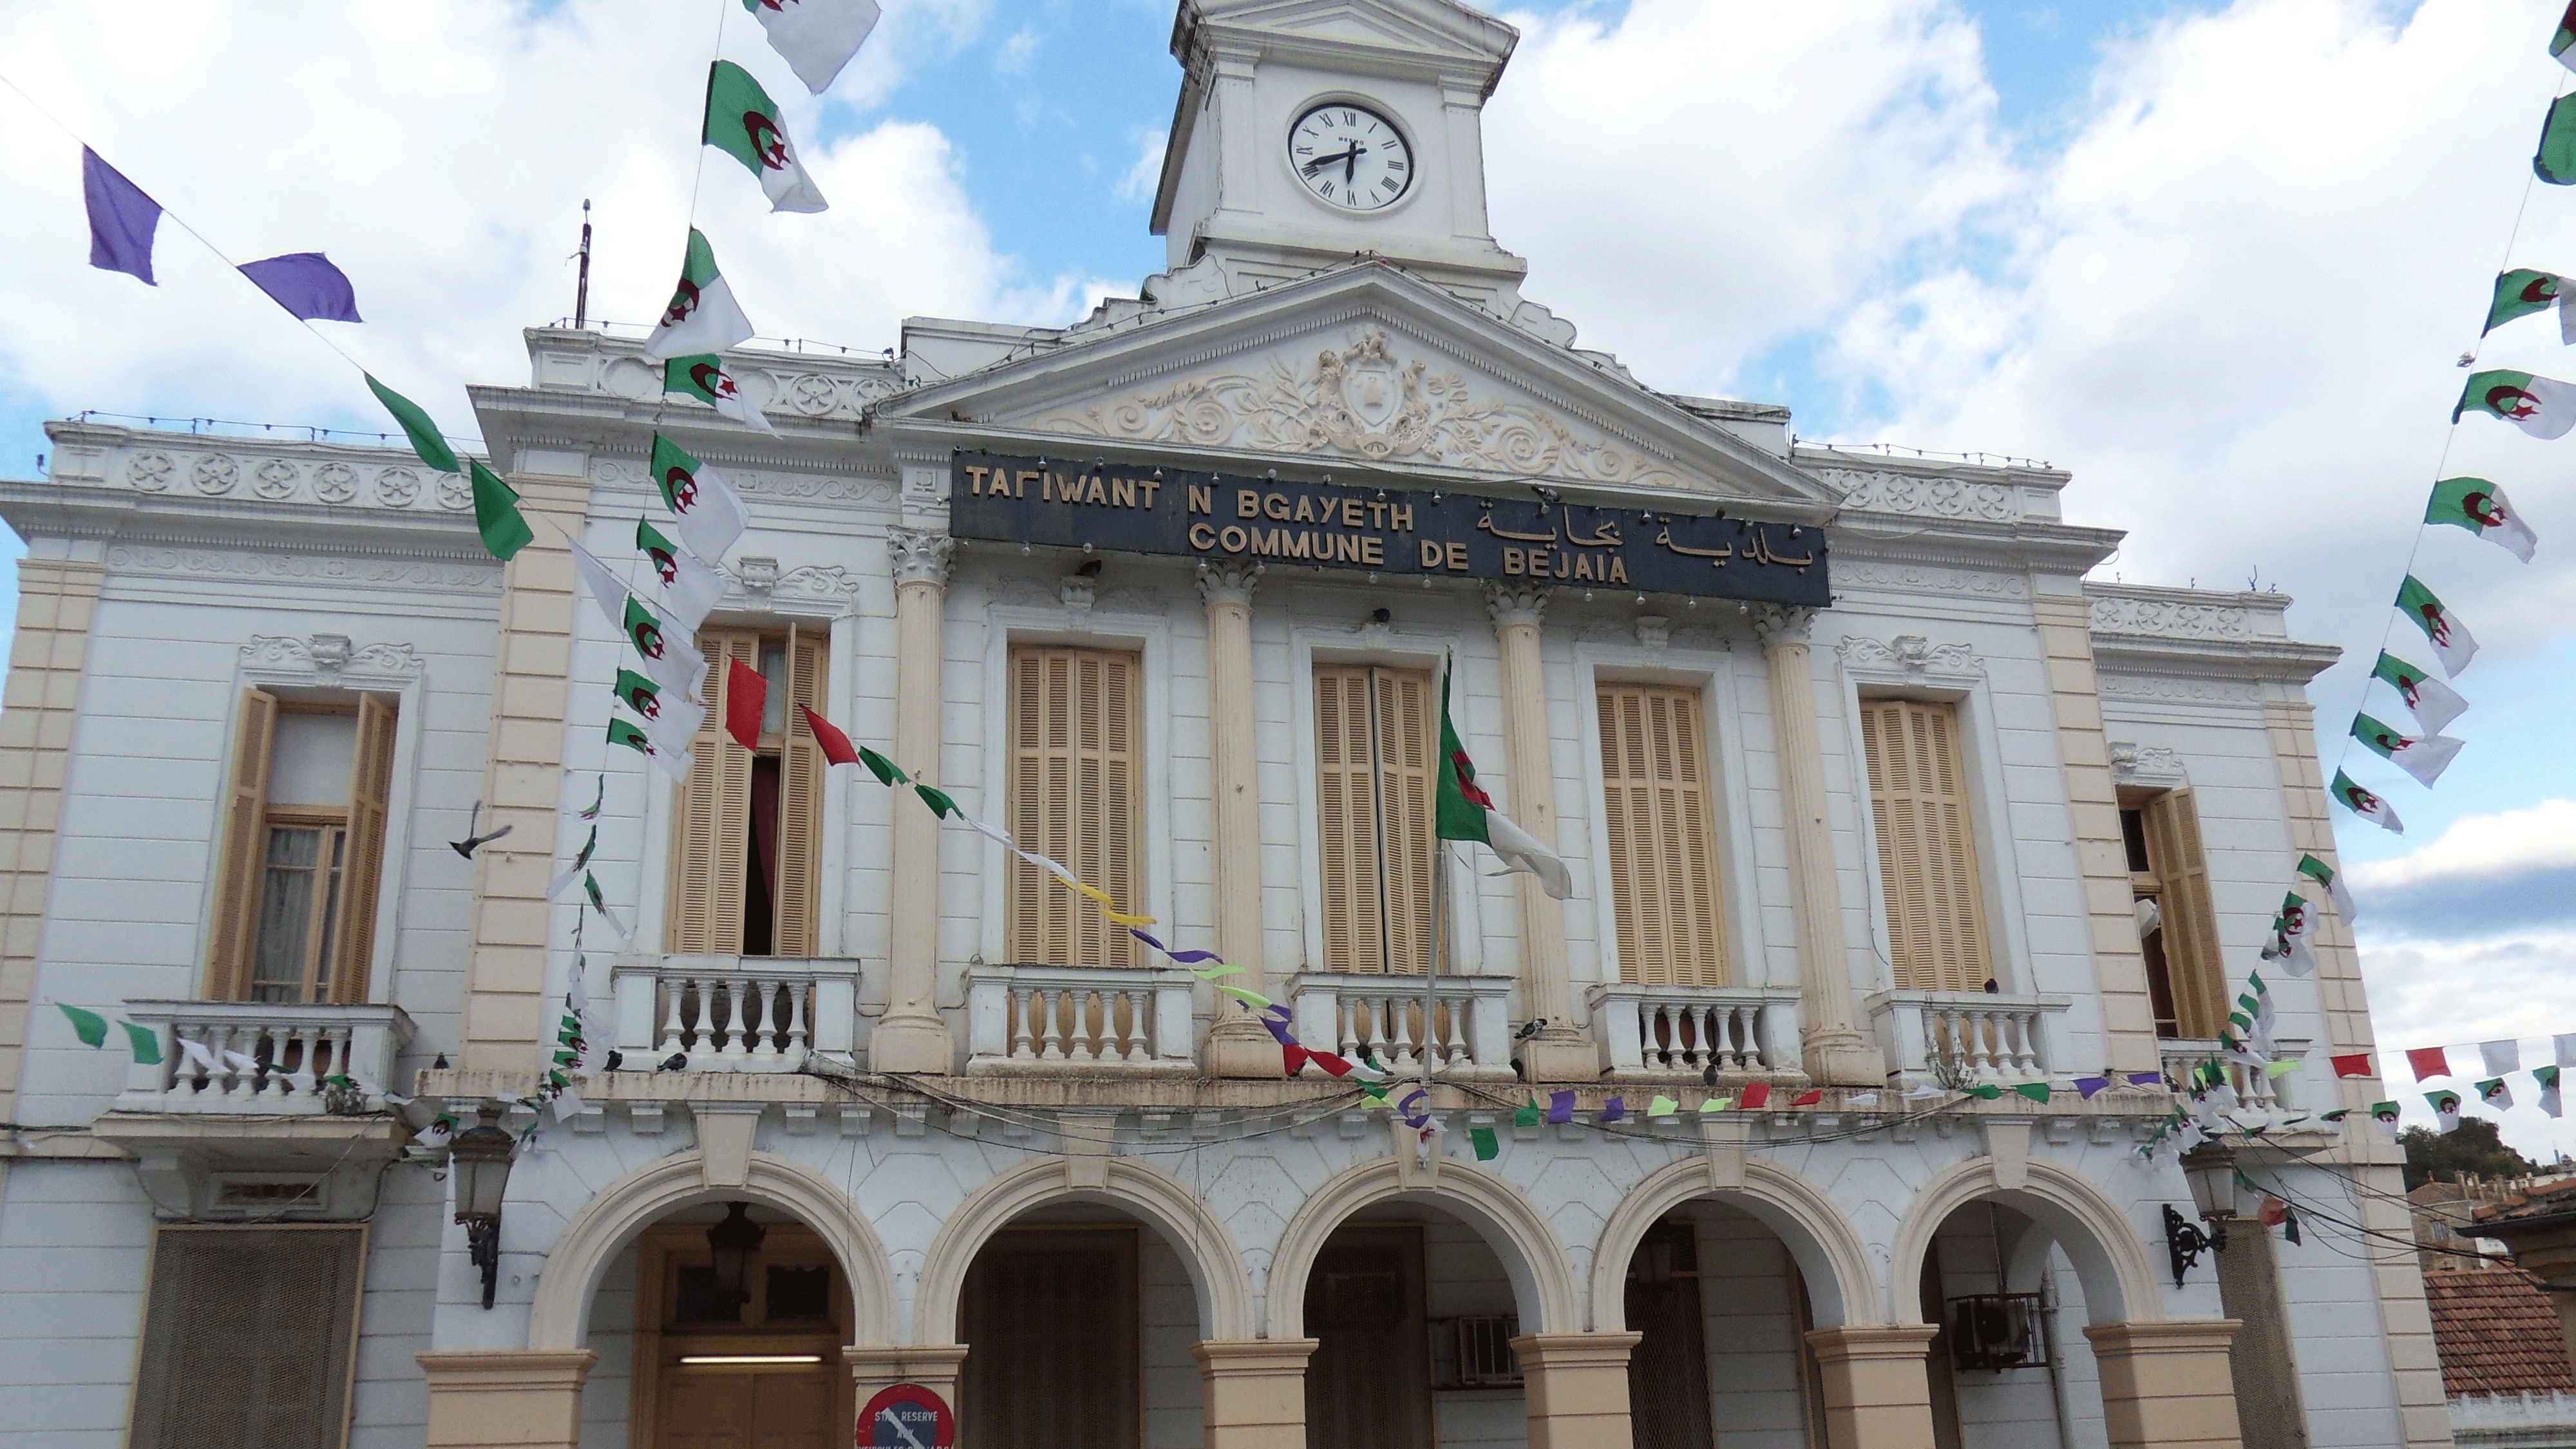 مبنى بلدية بجاية